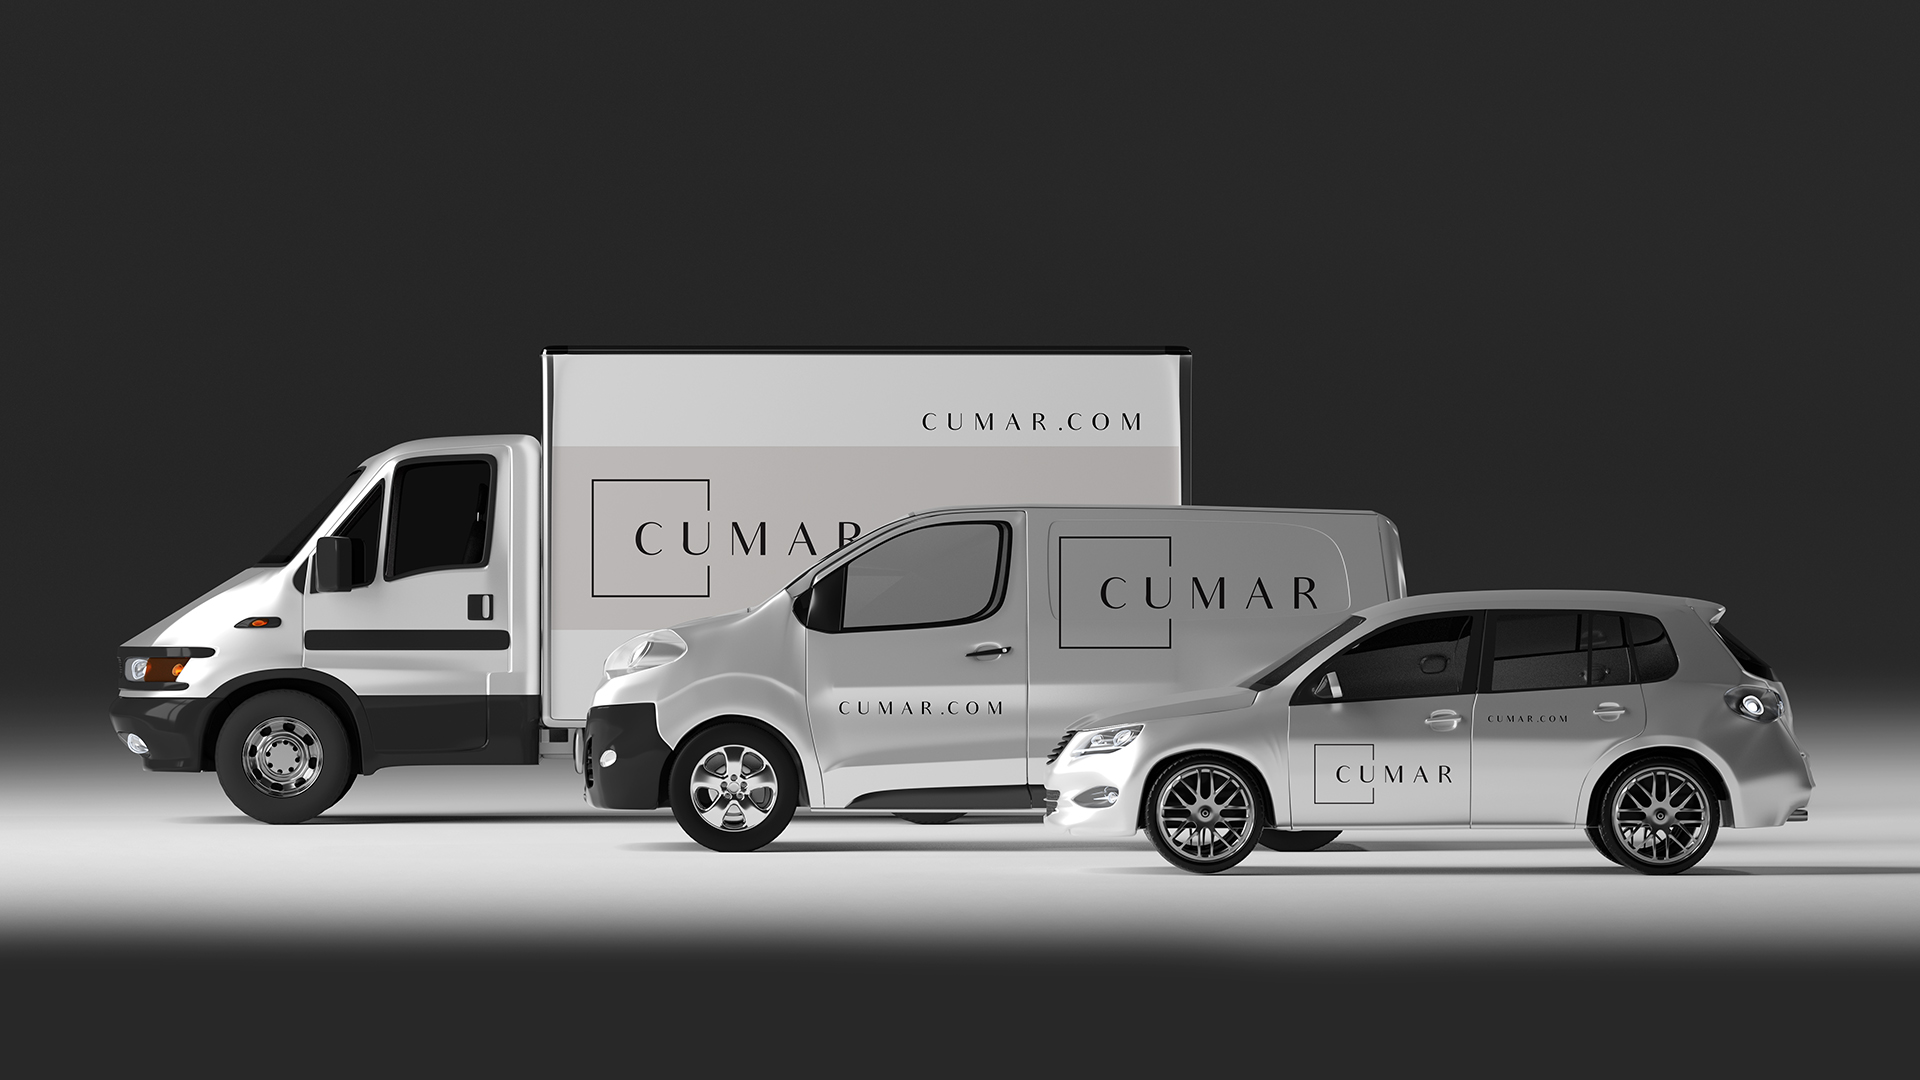 cumar trucks with cumar logo and website